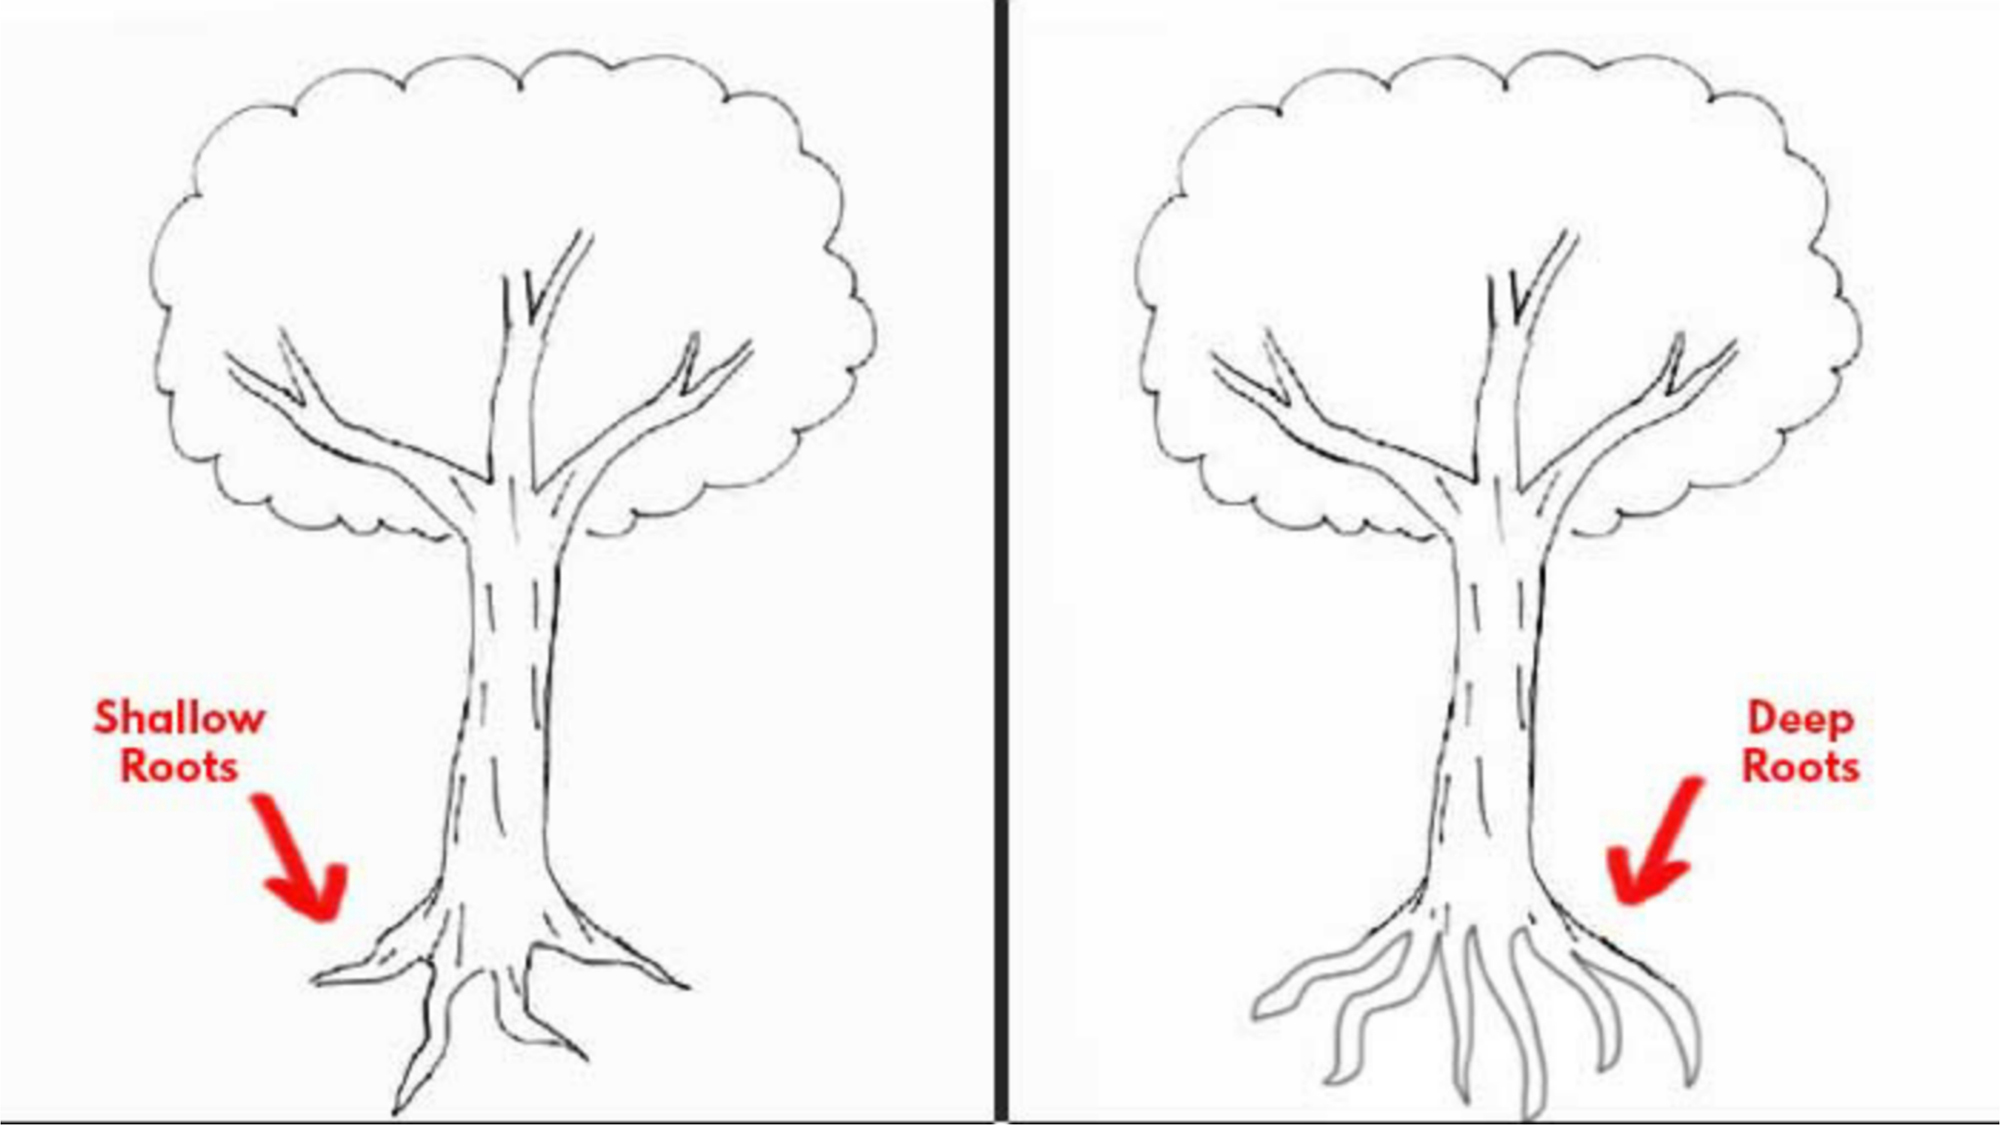 Cách vẽ cây tiết lộ cảm xúc: Bạn muốn học cách phối hợp các màu sắc và hình dáng để vẽ cây có thể thể hiện được cảm xúc của người vẽ? Chúng tôi chia sẻ một số kỹ thuật để bạn có thể tạo ra một bức tranh về các loài cây vô cùng ấn tượng và độc đáo.